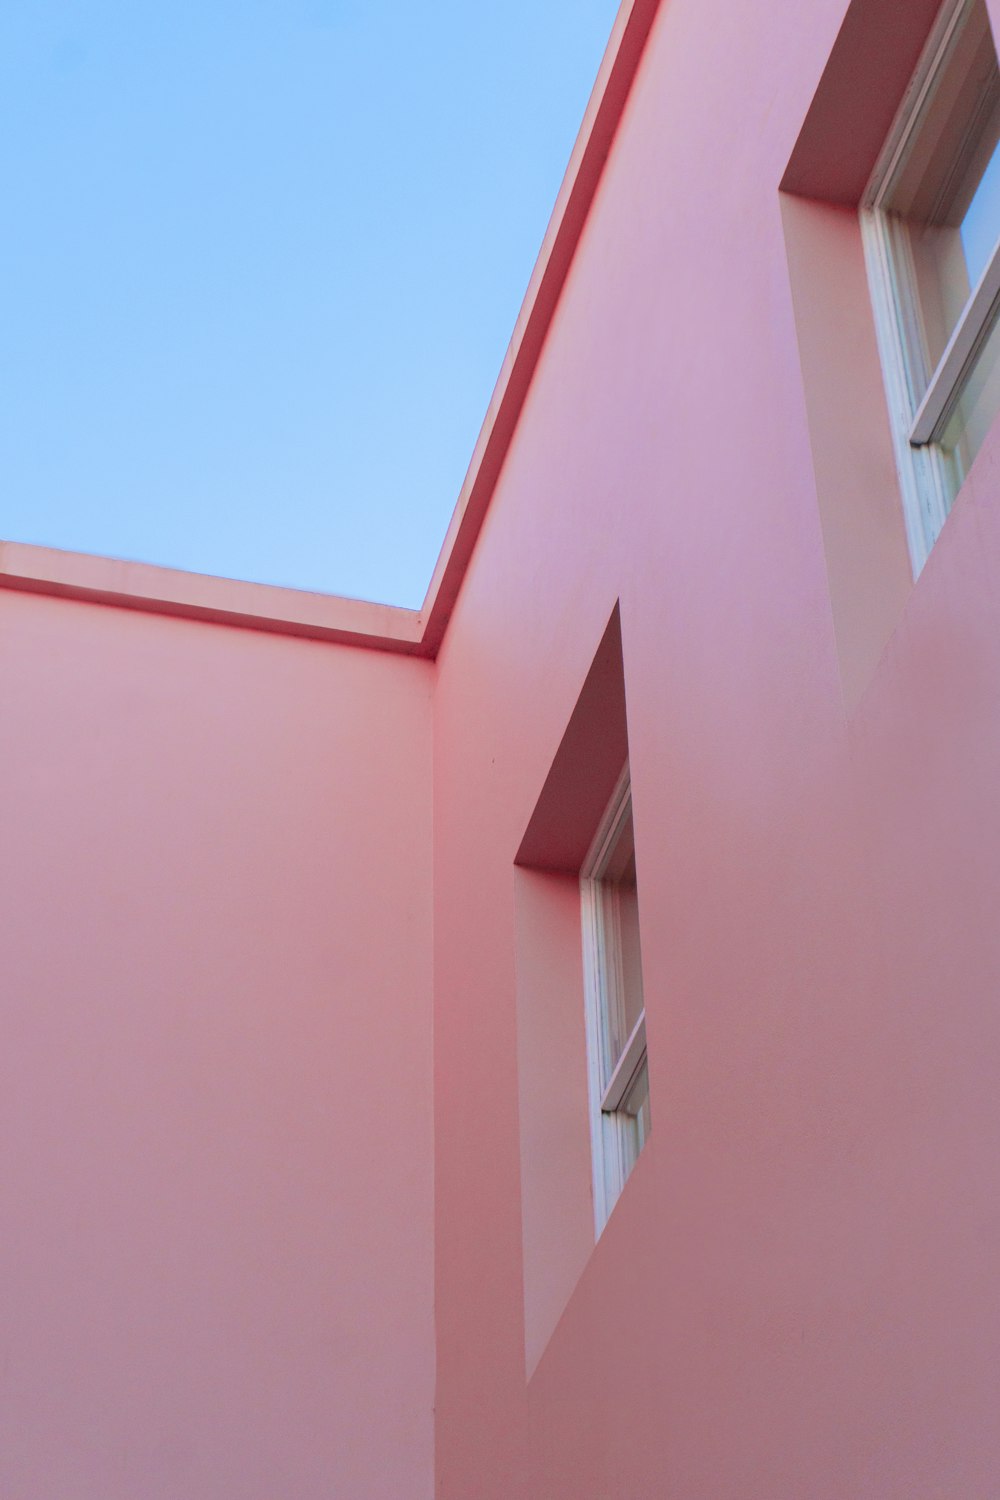 昼間の青空に映えるピンク色のコンクリートの建物